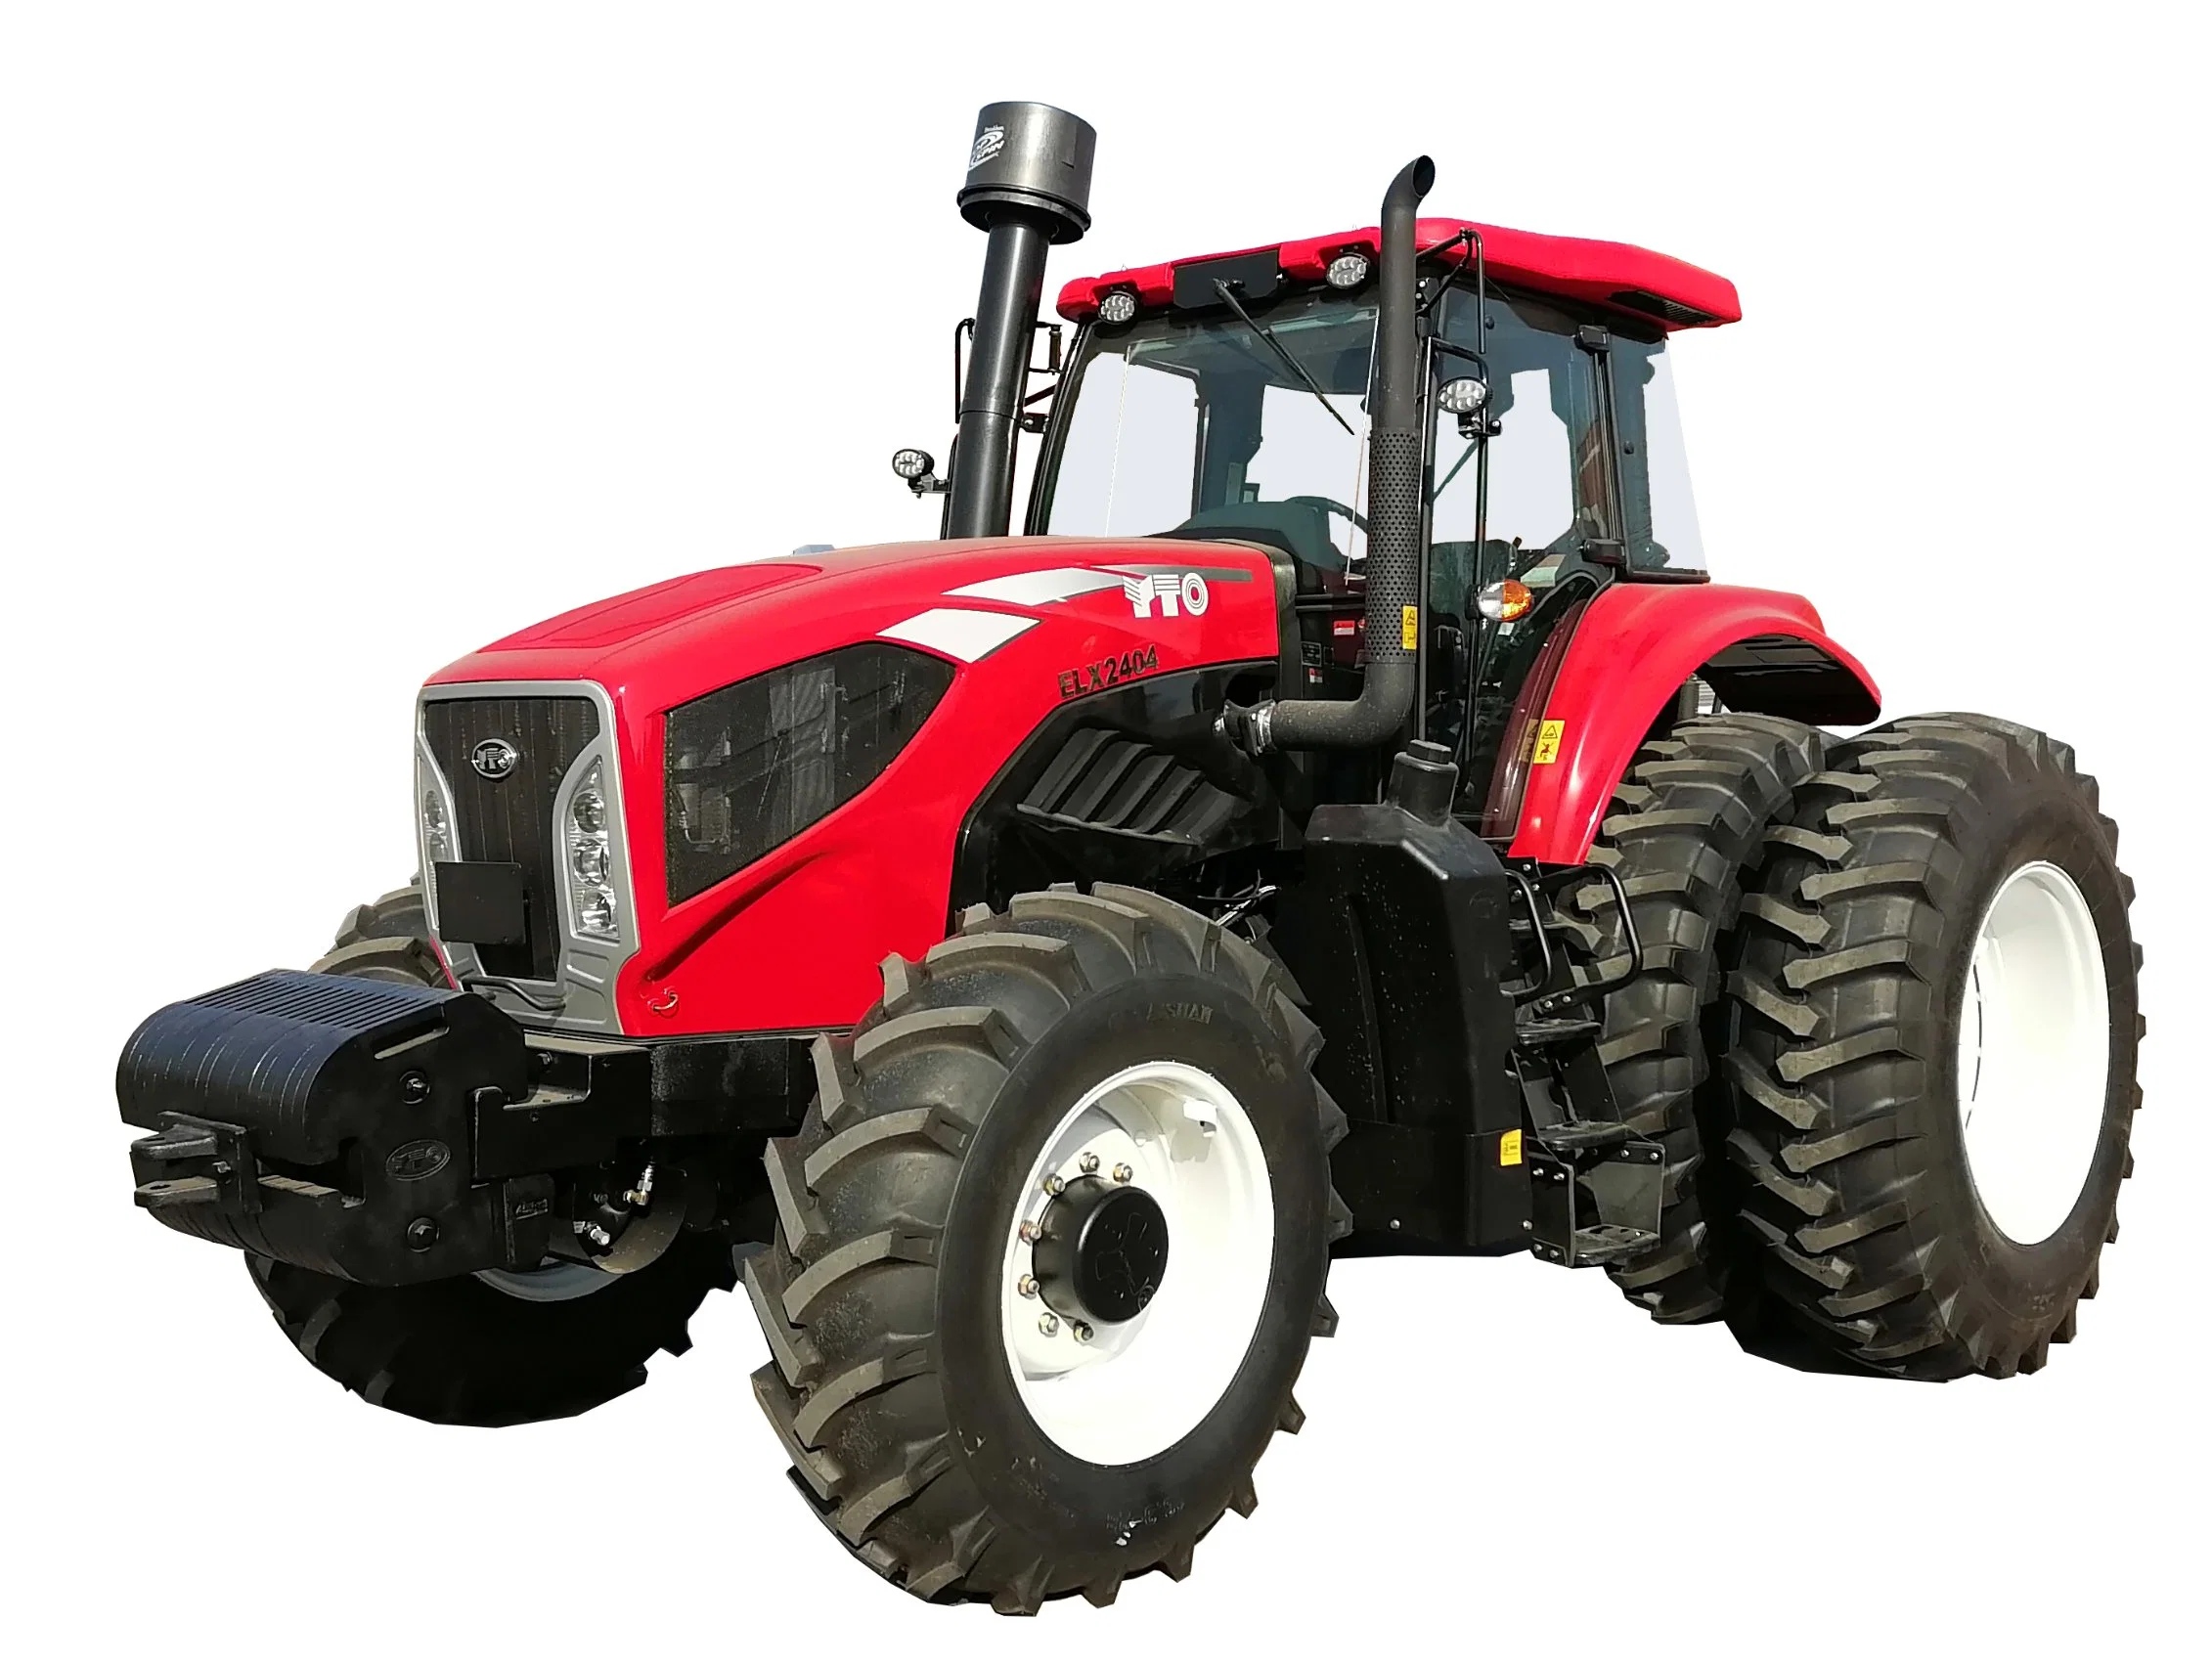 Maquinaria Agrícola: Tractor Yto 220HP/240HP para Granja/Agricultura con Cabina o Dosel (2204/2404)